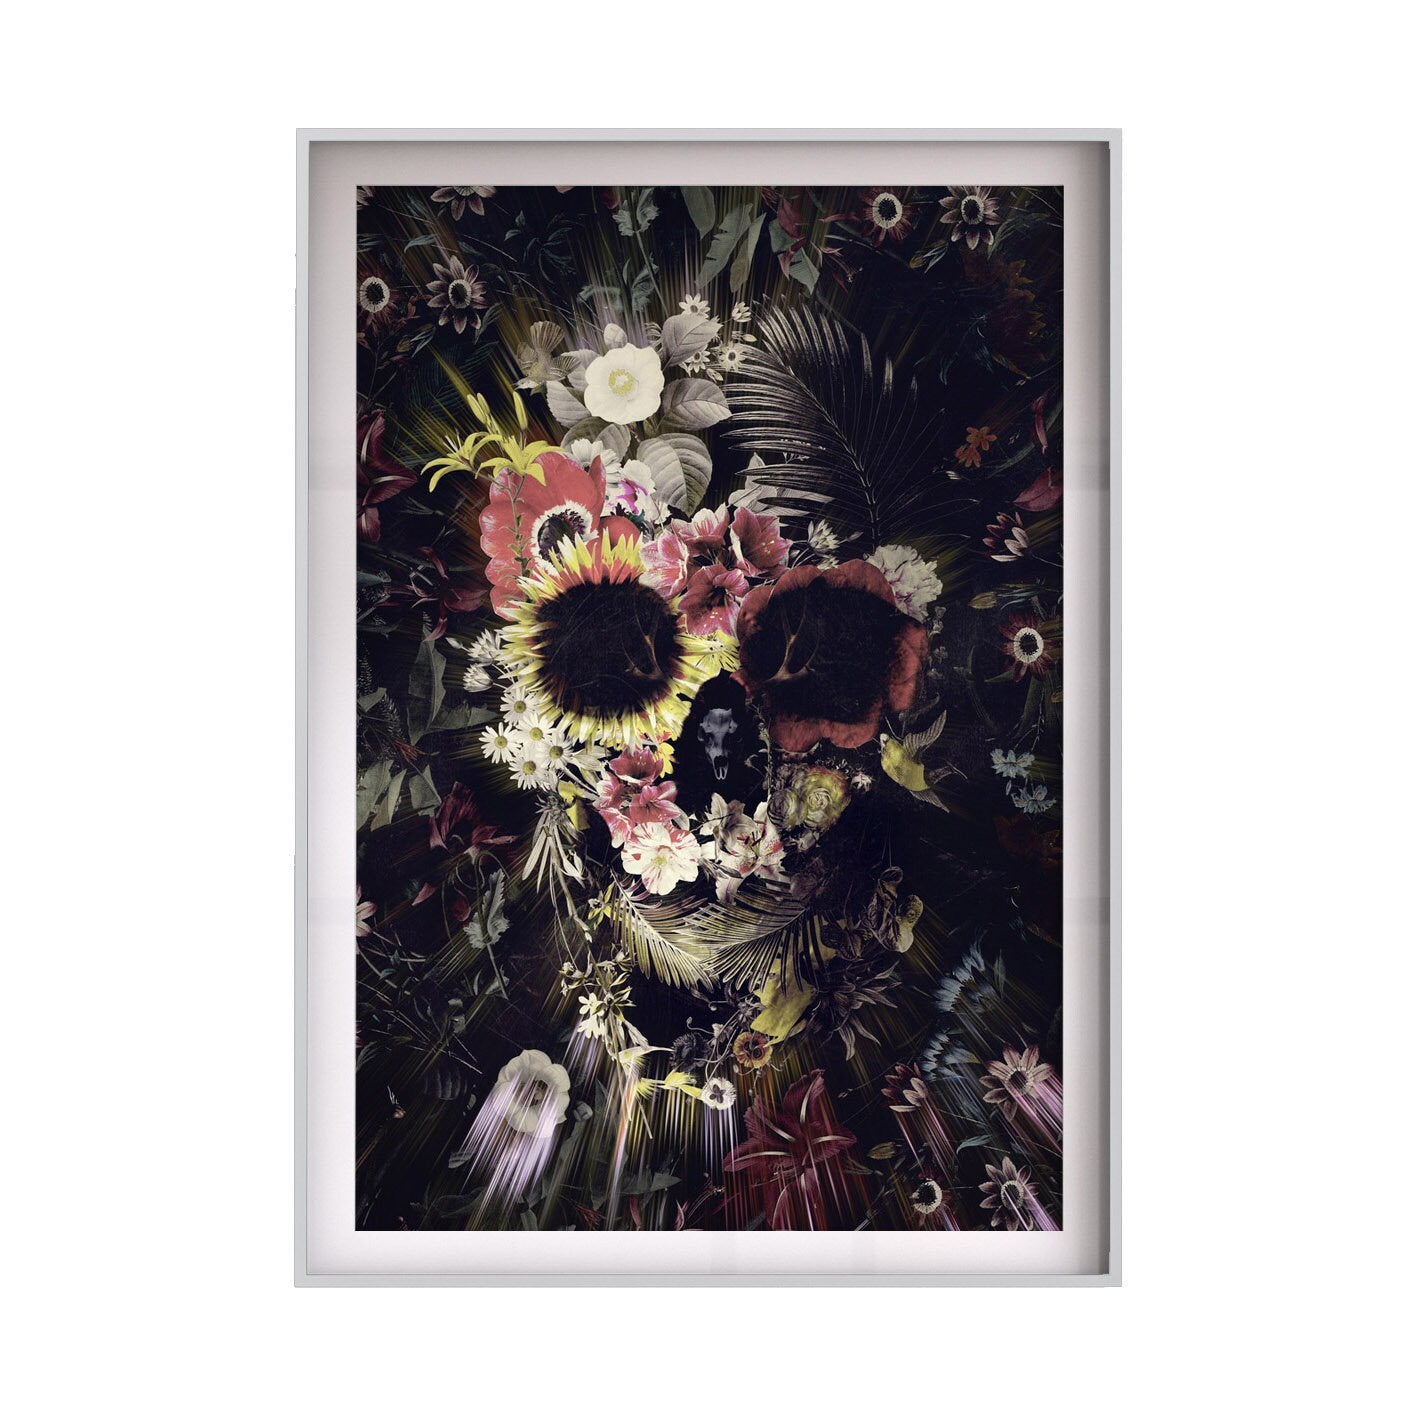 Set Of 2 Skull Print, Sugar Skull Art Print Home Decor Botanical Dark Flower Skull Wall Art Gift, Halloween Skull Artwork Poster Set